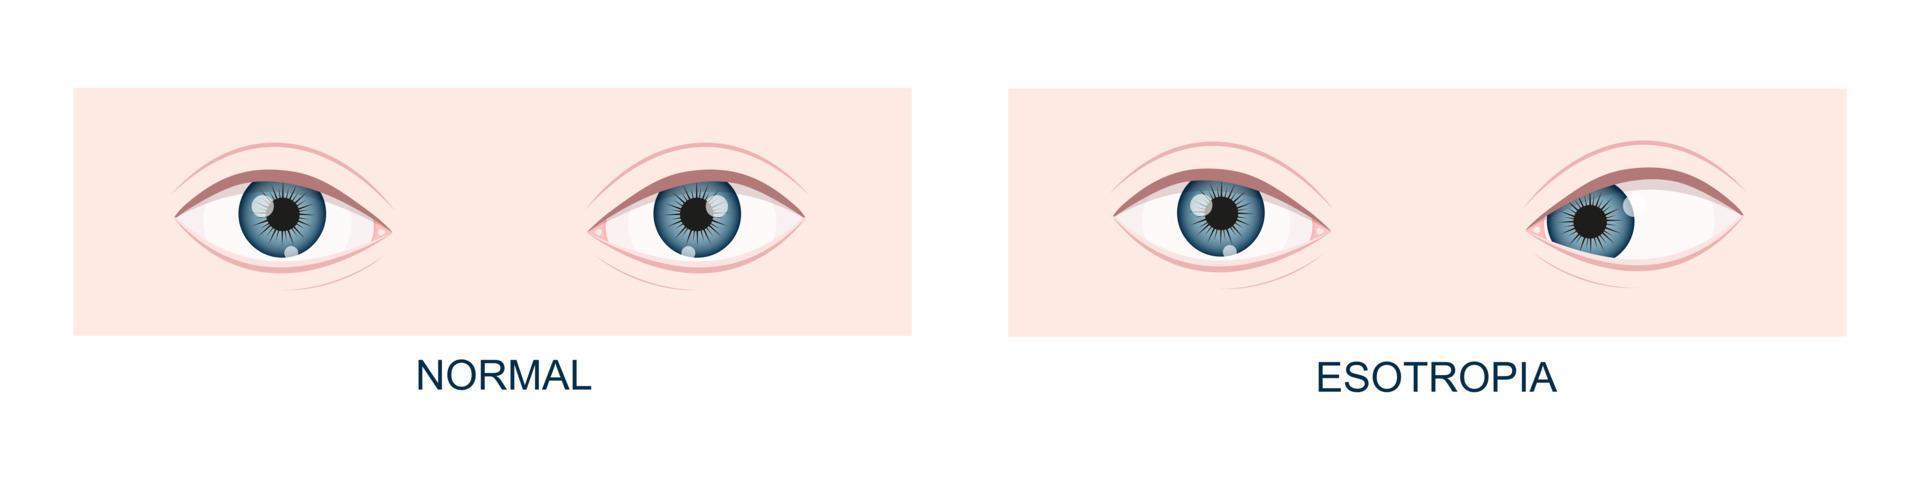 esotropi. horisontell strabismus innan och efter kirurgi. öga snedställning, skelögd skick. mänsklig ögon friska och med inåt blick placera. dubbel- syn vektor